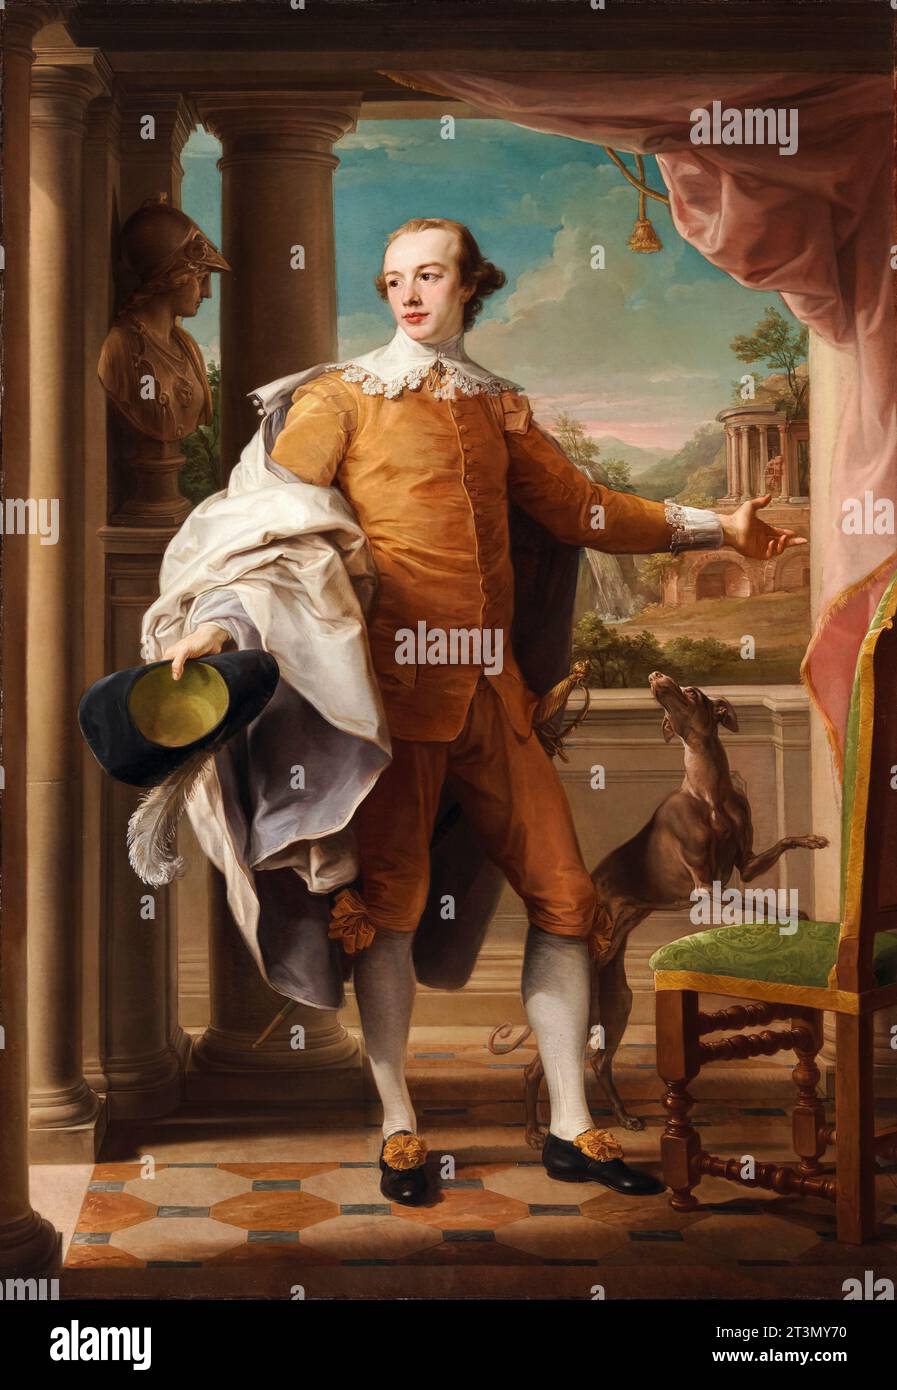 Sir Wyndham Knatchbull-Wyndham, 6e baronnet, (1737-1763), politicien britannique Whig, portrait à l'huile sur toile de Pompeo Batoni, 1758-1759 Banque D'Images